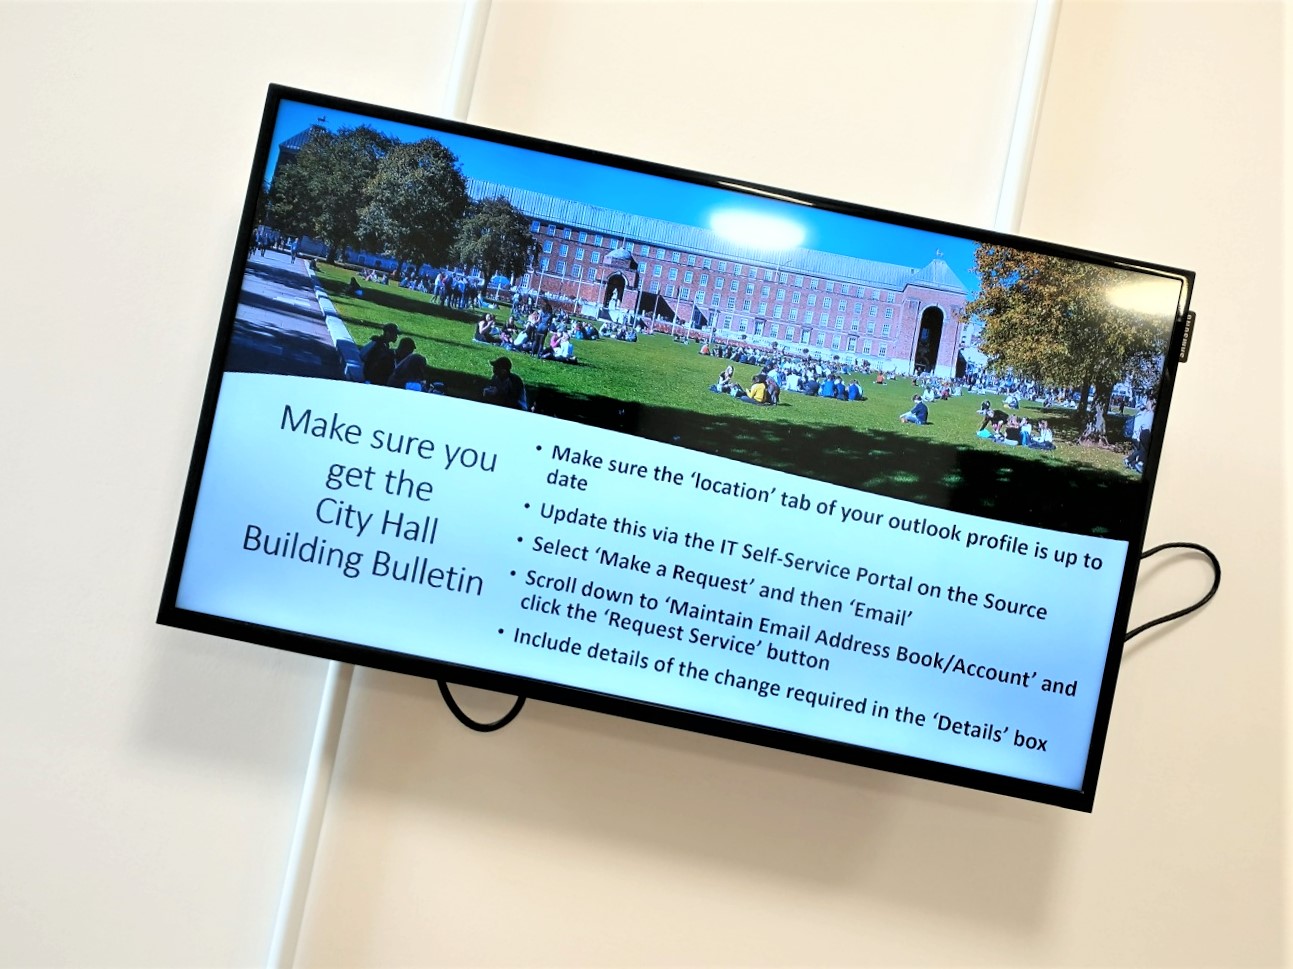 Ein Monitor zeigt Informationen für Besucher*innen an